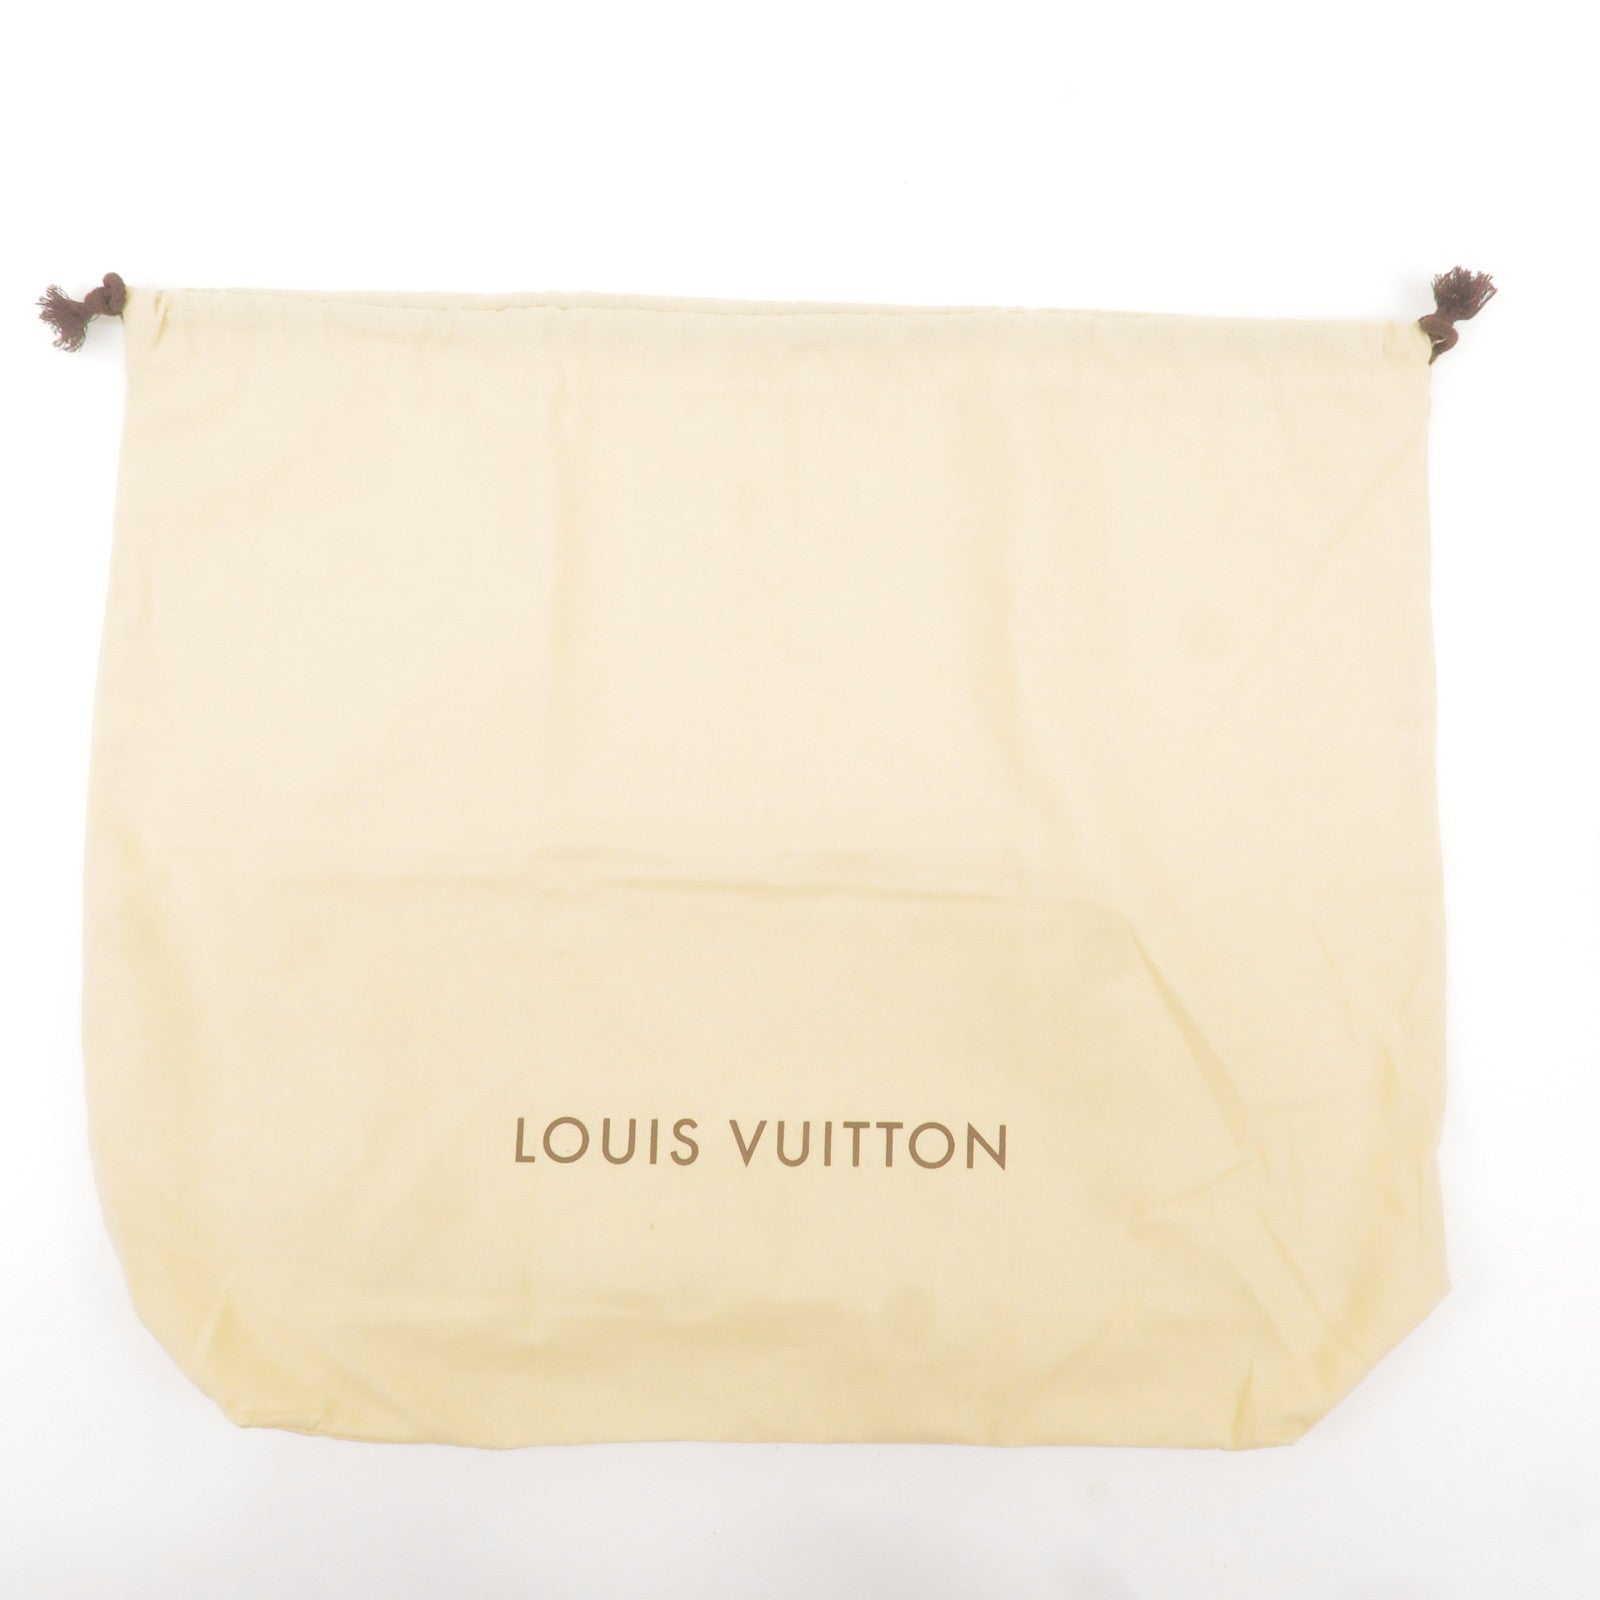 Louis Vuitton, Bags, Authentic Louis Vuitton Bag And Dust Bag